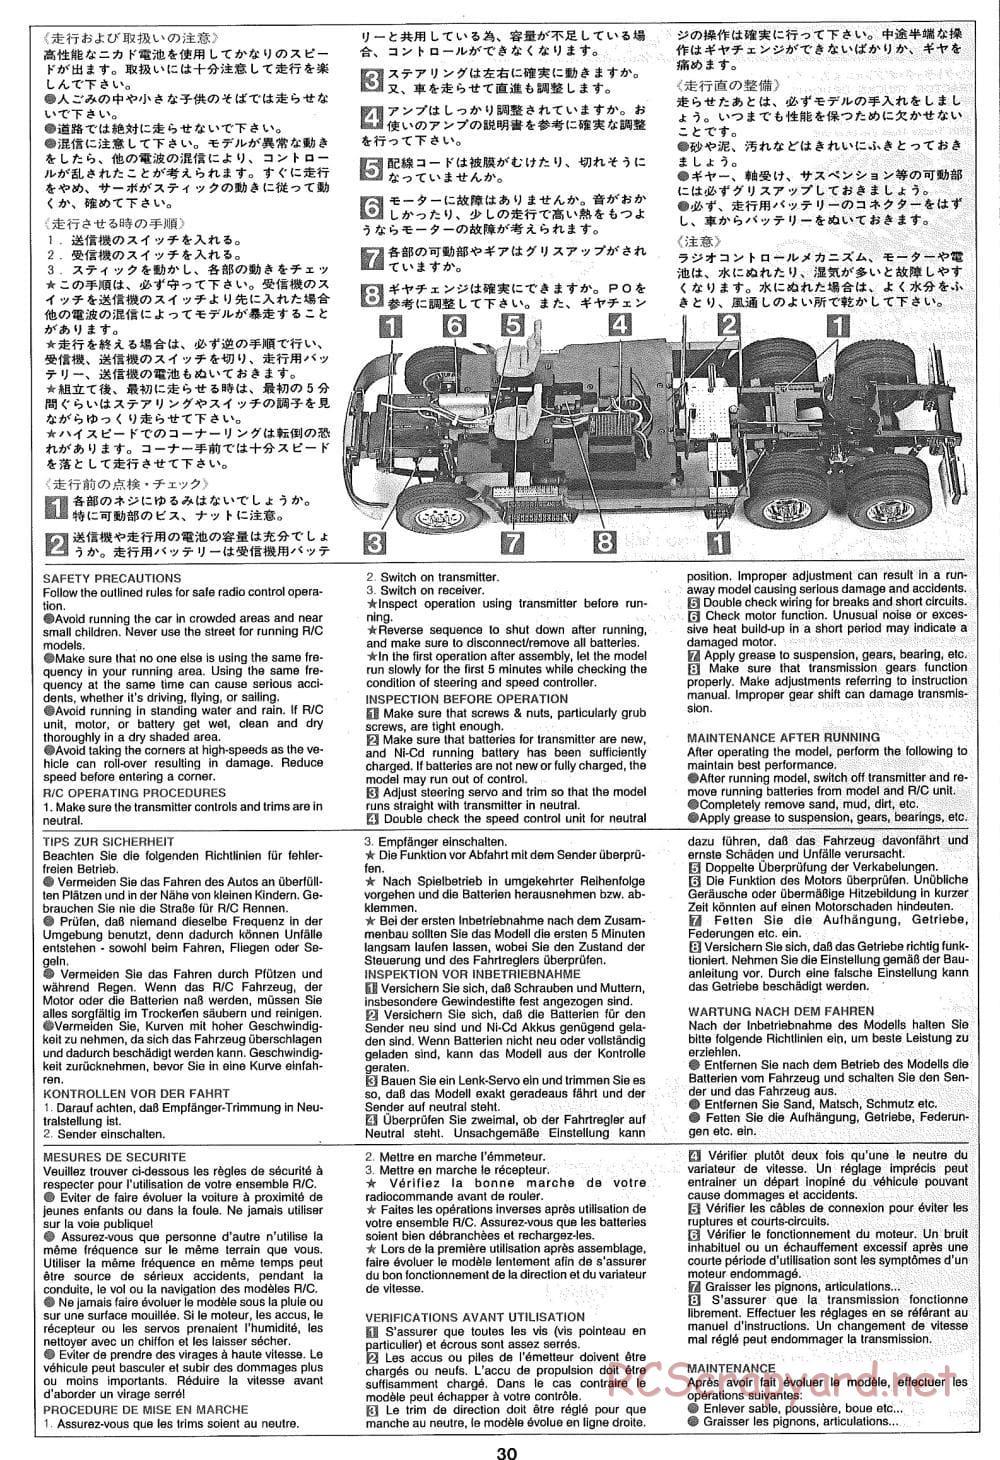 Tamiya - Ford Aeromax - Manual - Page 30